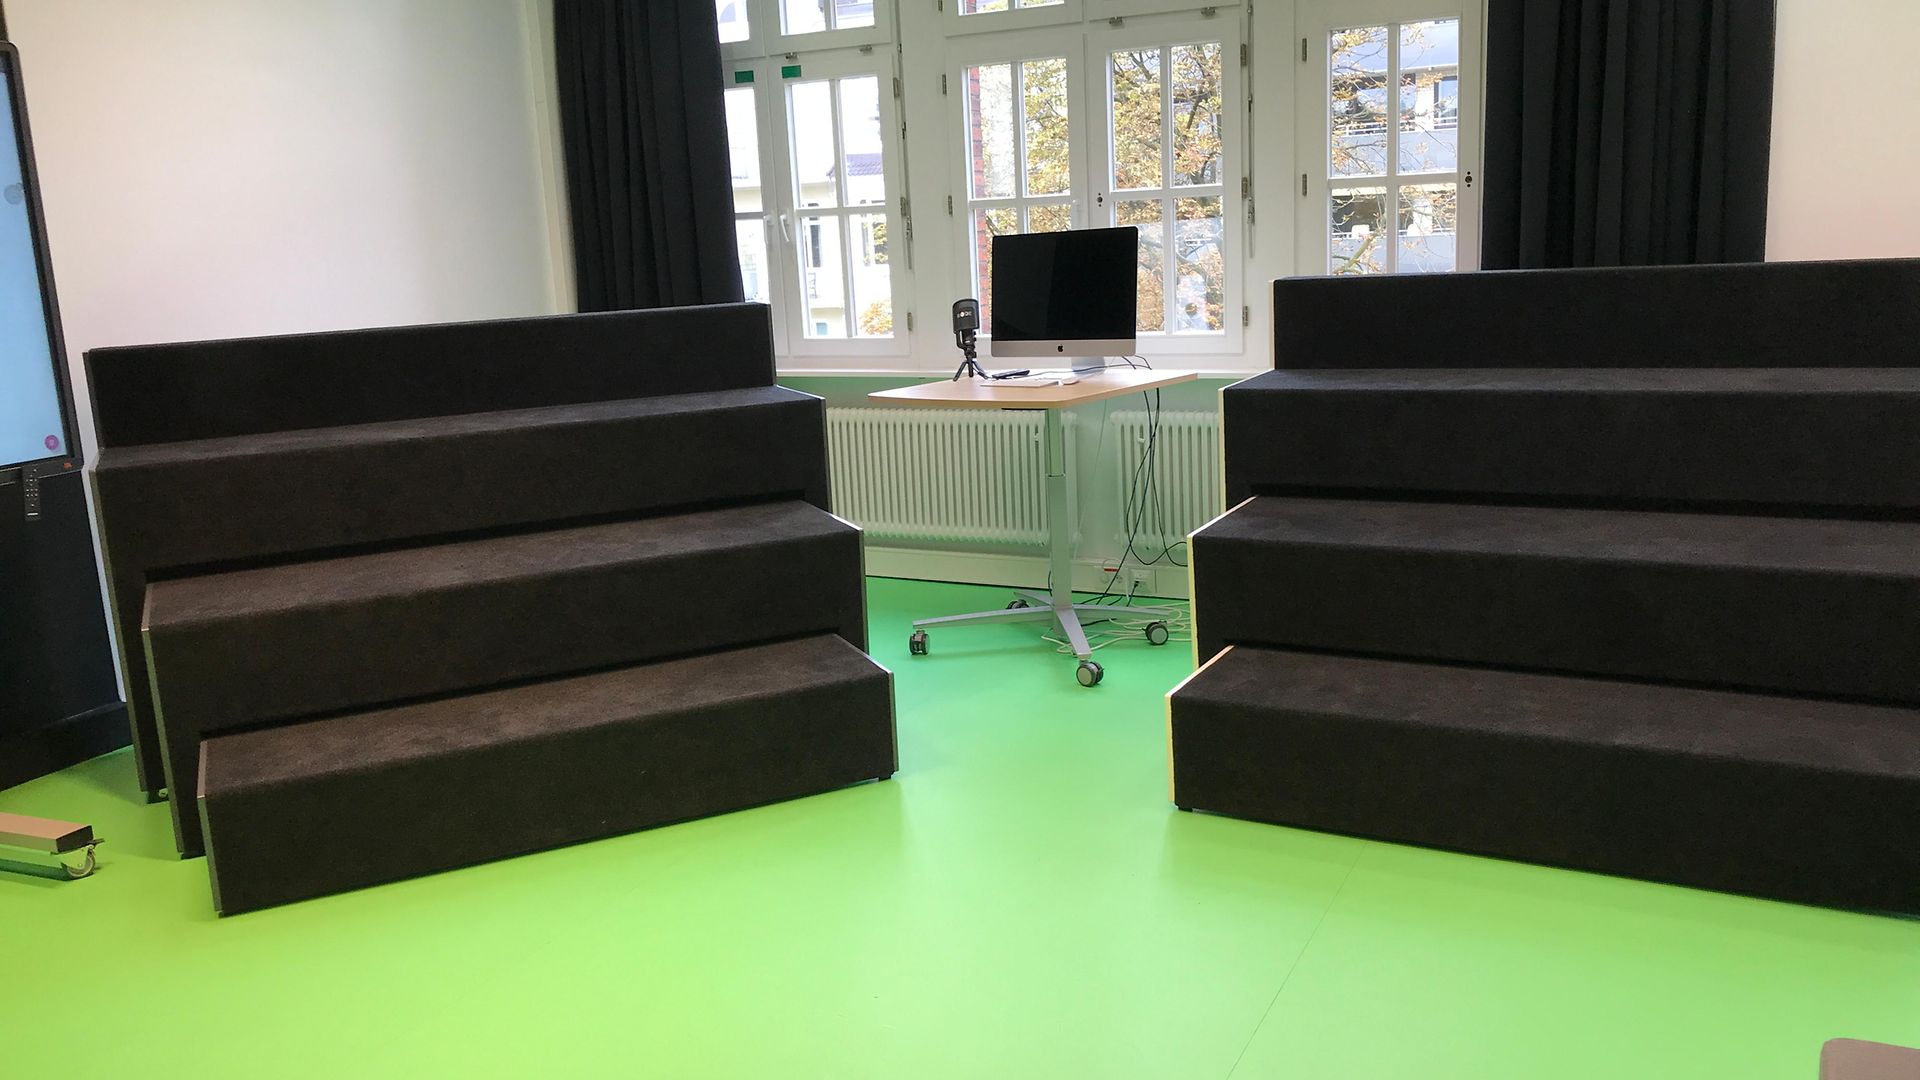 Blick auf die mobilen Möbel im Greenscreen-Raum